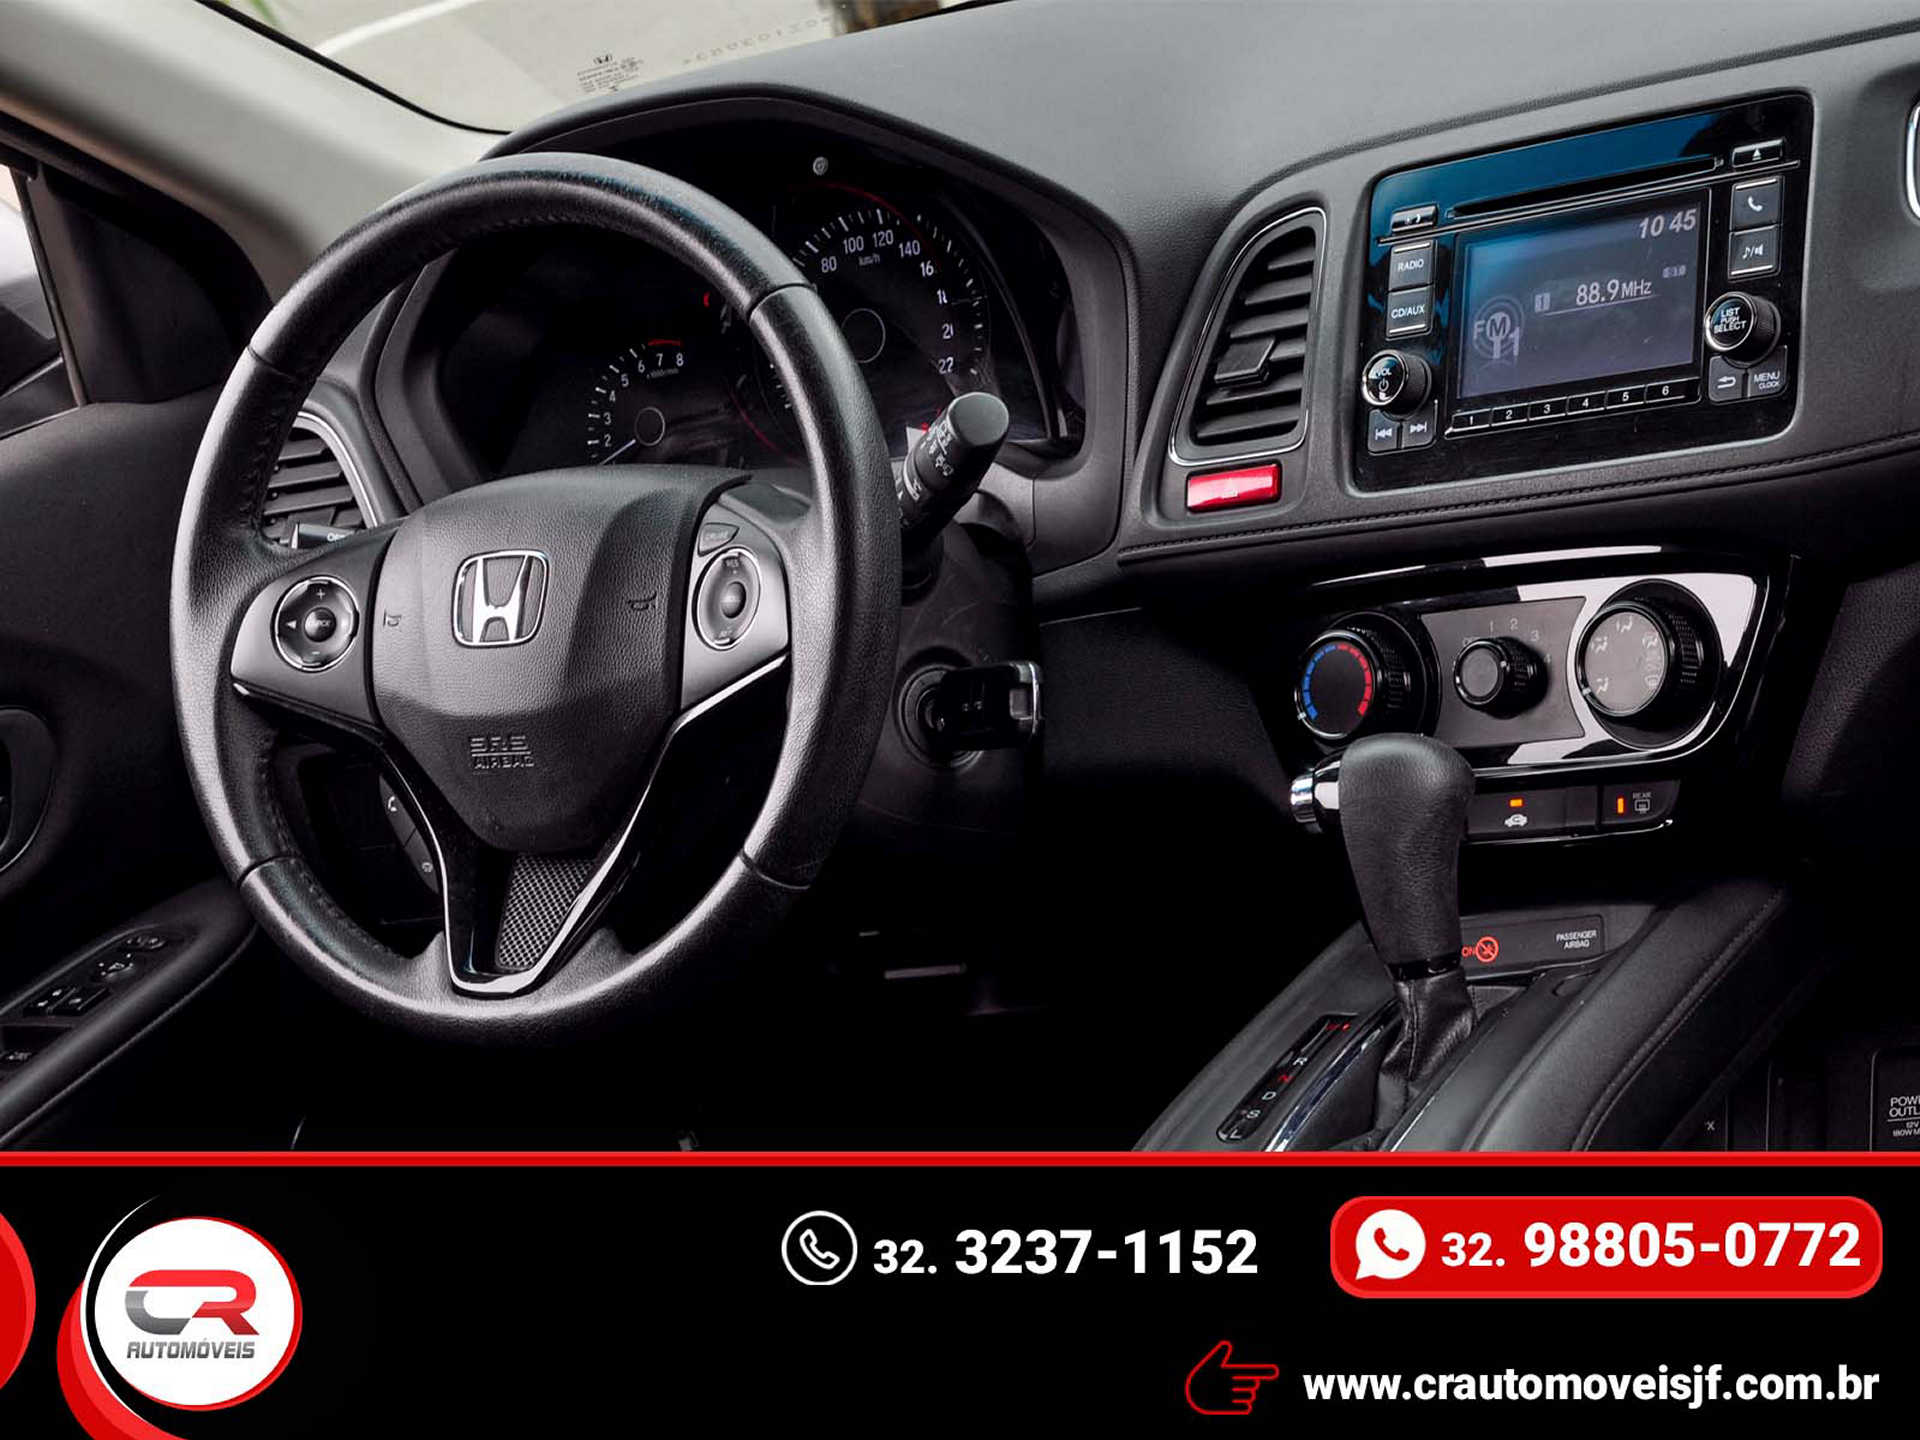 Honda HRV EX 1.8 Flexone 16V 5p Aut. 2015/2016 CR